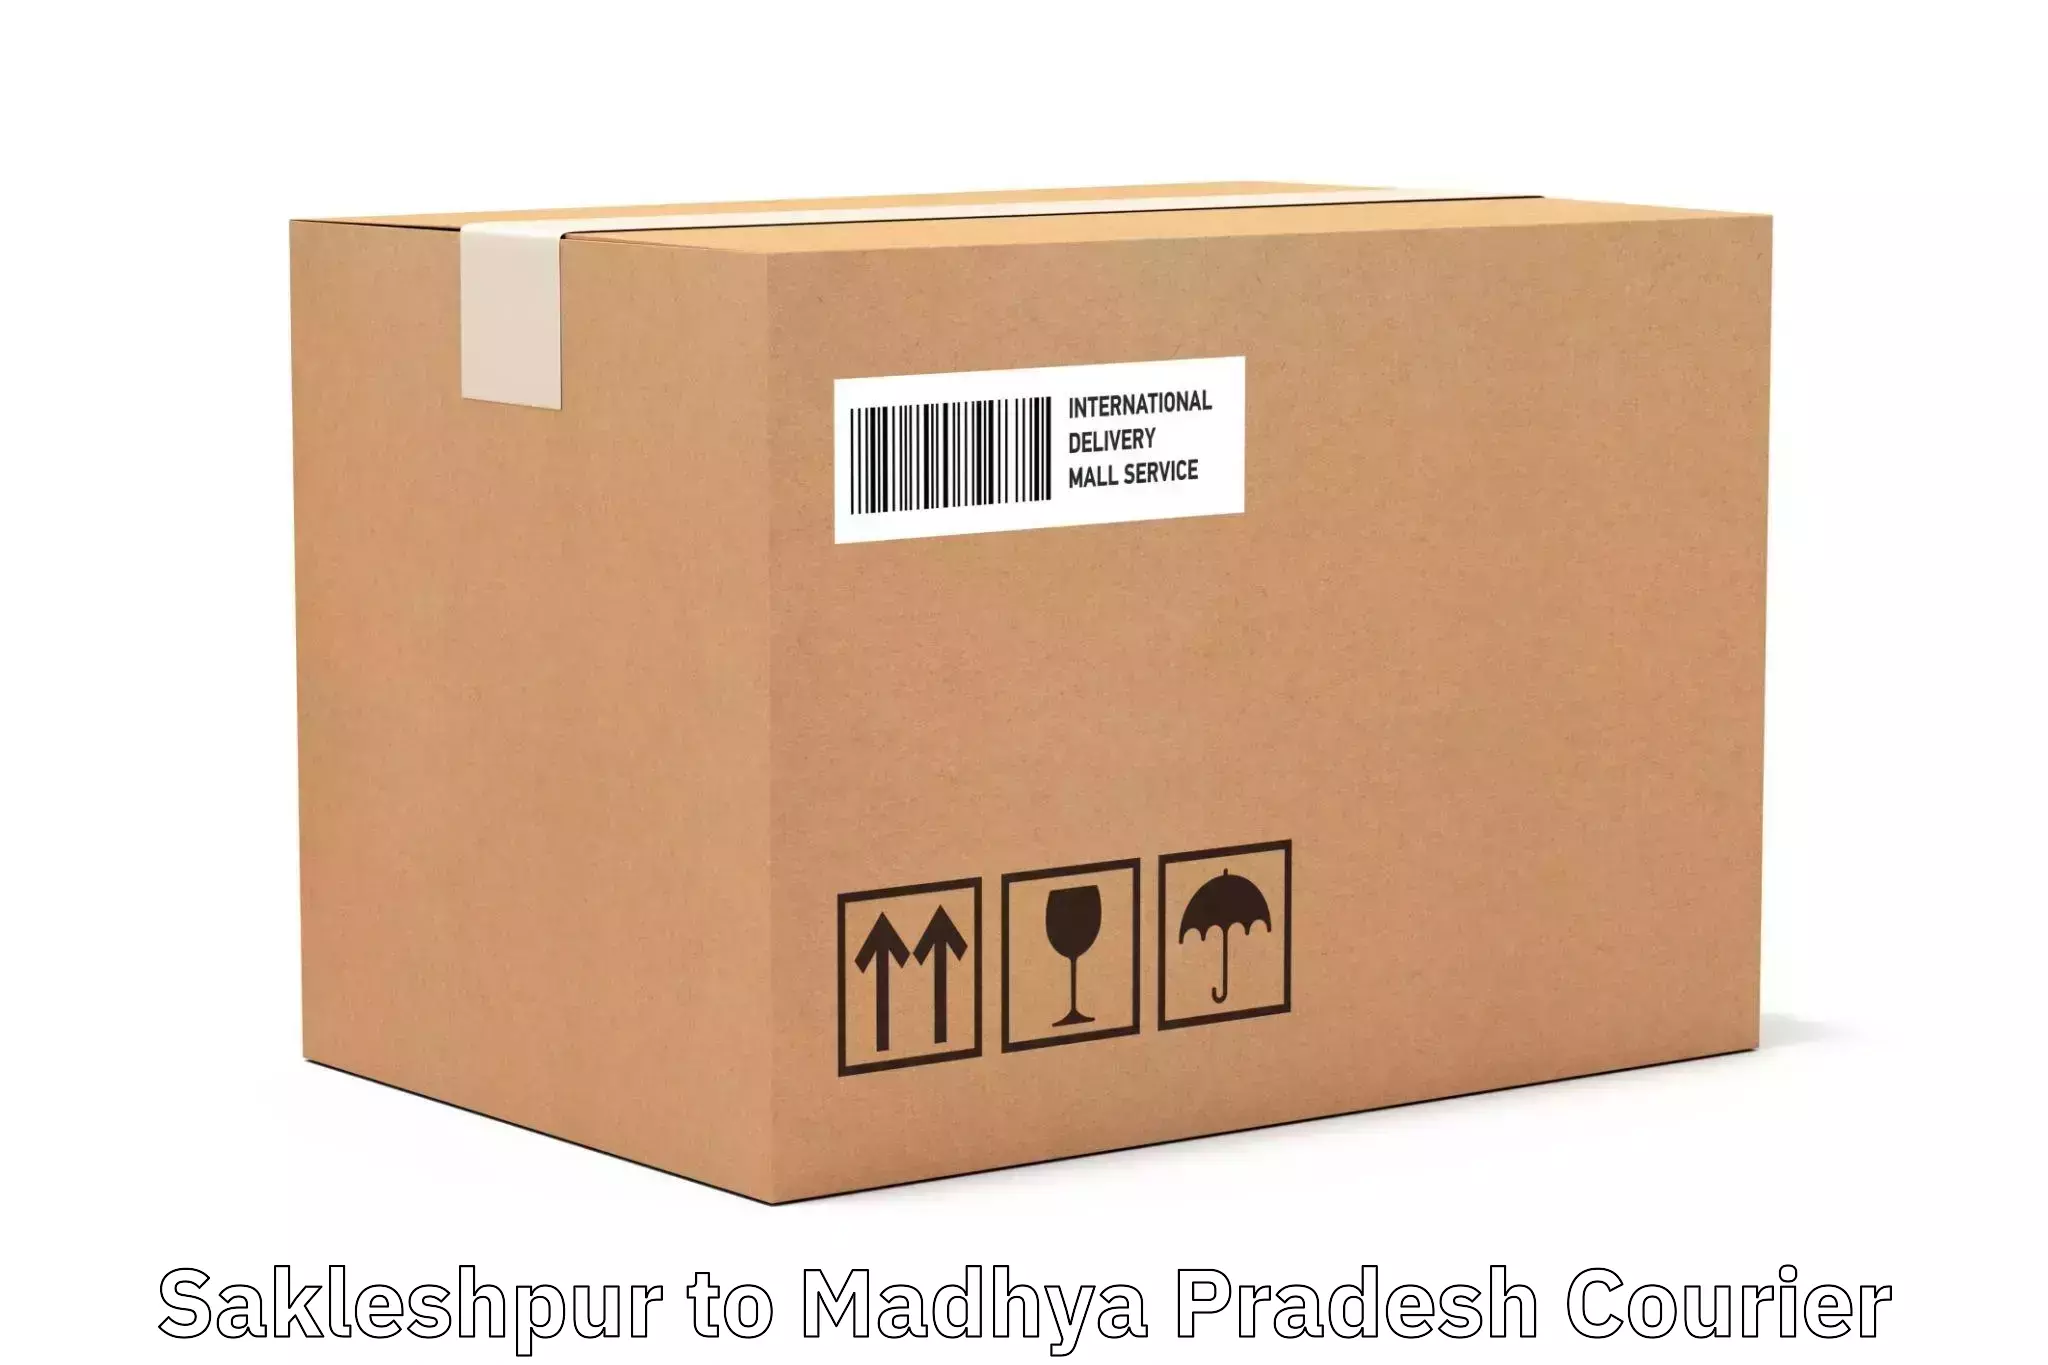 Round-the-clock parcel delivery Sakleshpur to Dewas